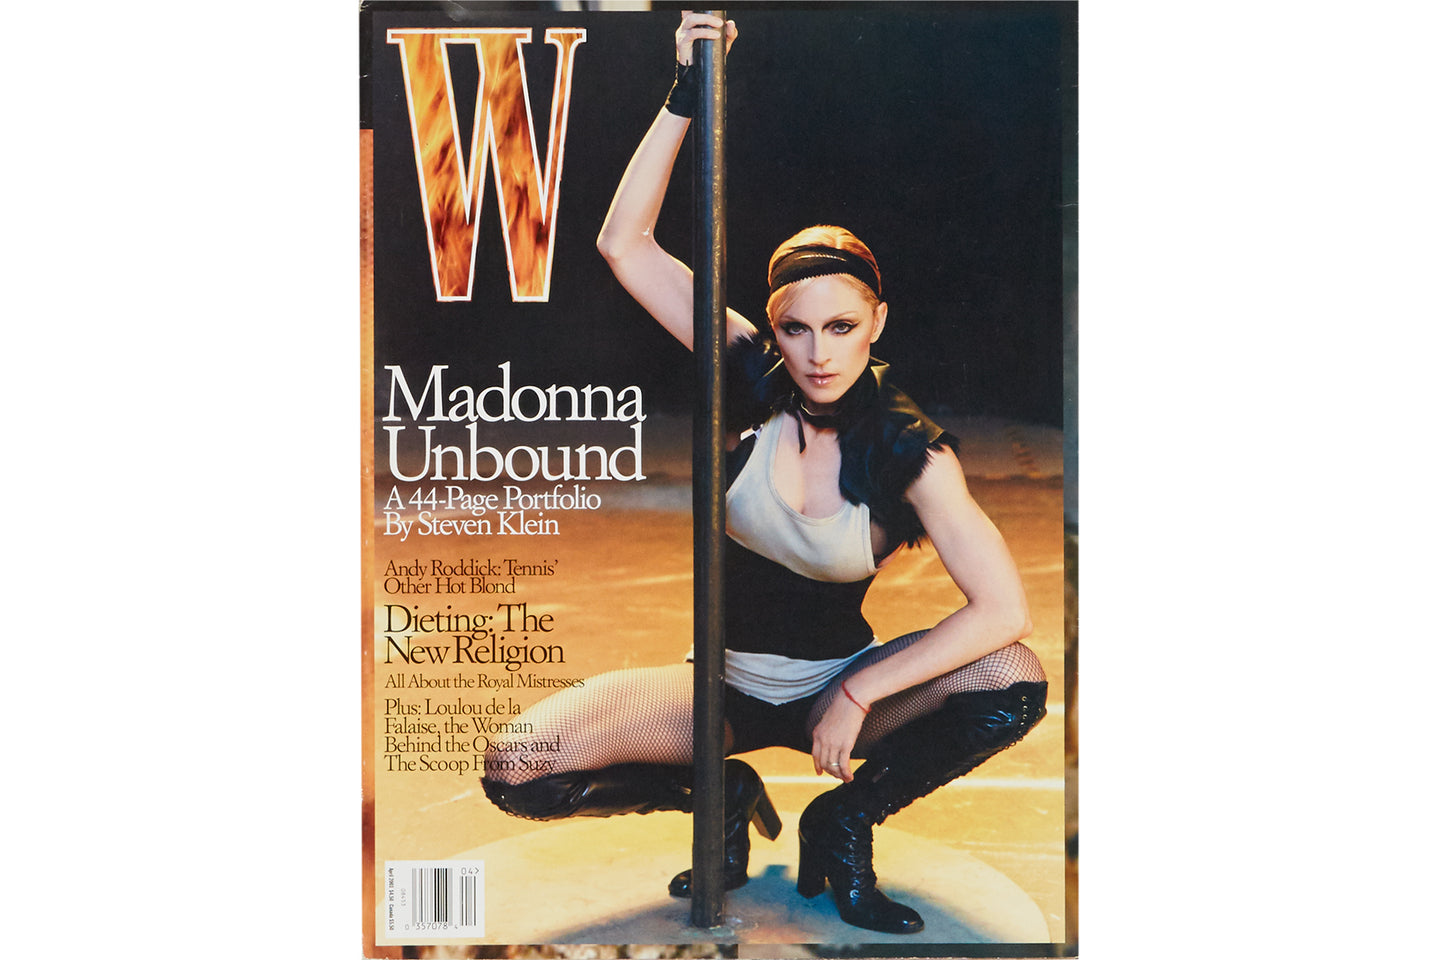 Madonna Unbound, W Magazine April 2003